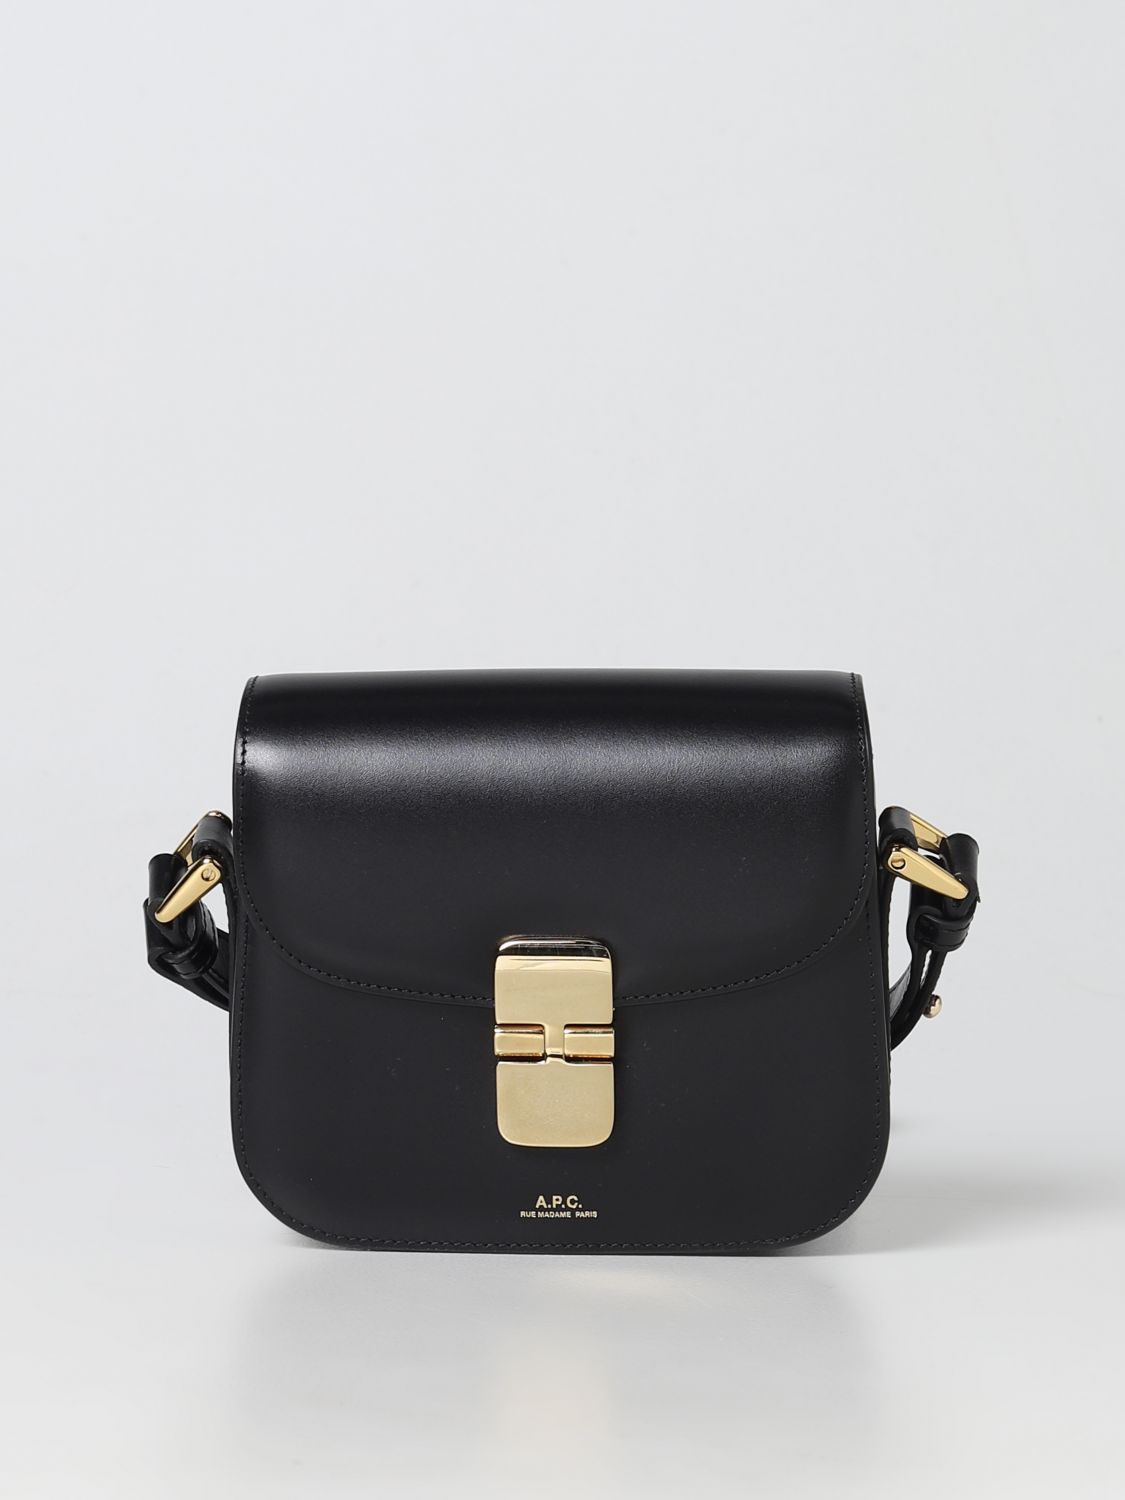 A.P.C.: mini bag for women - Black | A.p.c. mini bag PXBMWF61515 online ...